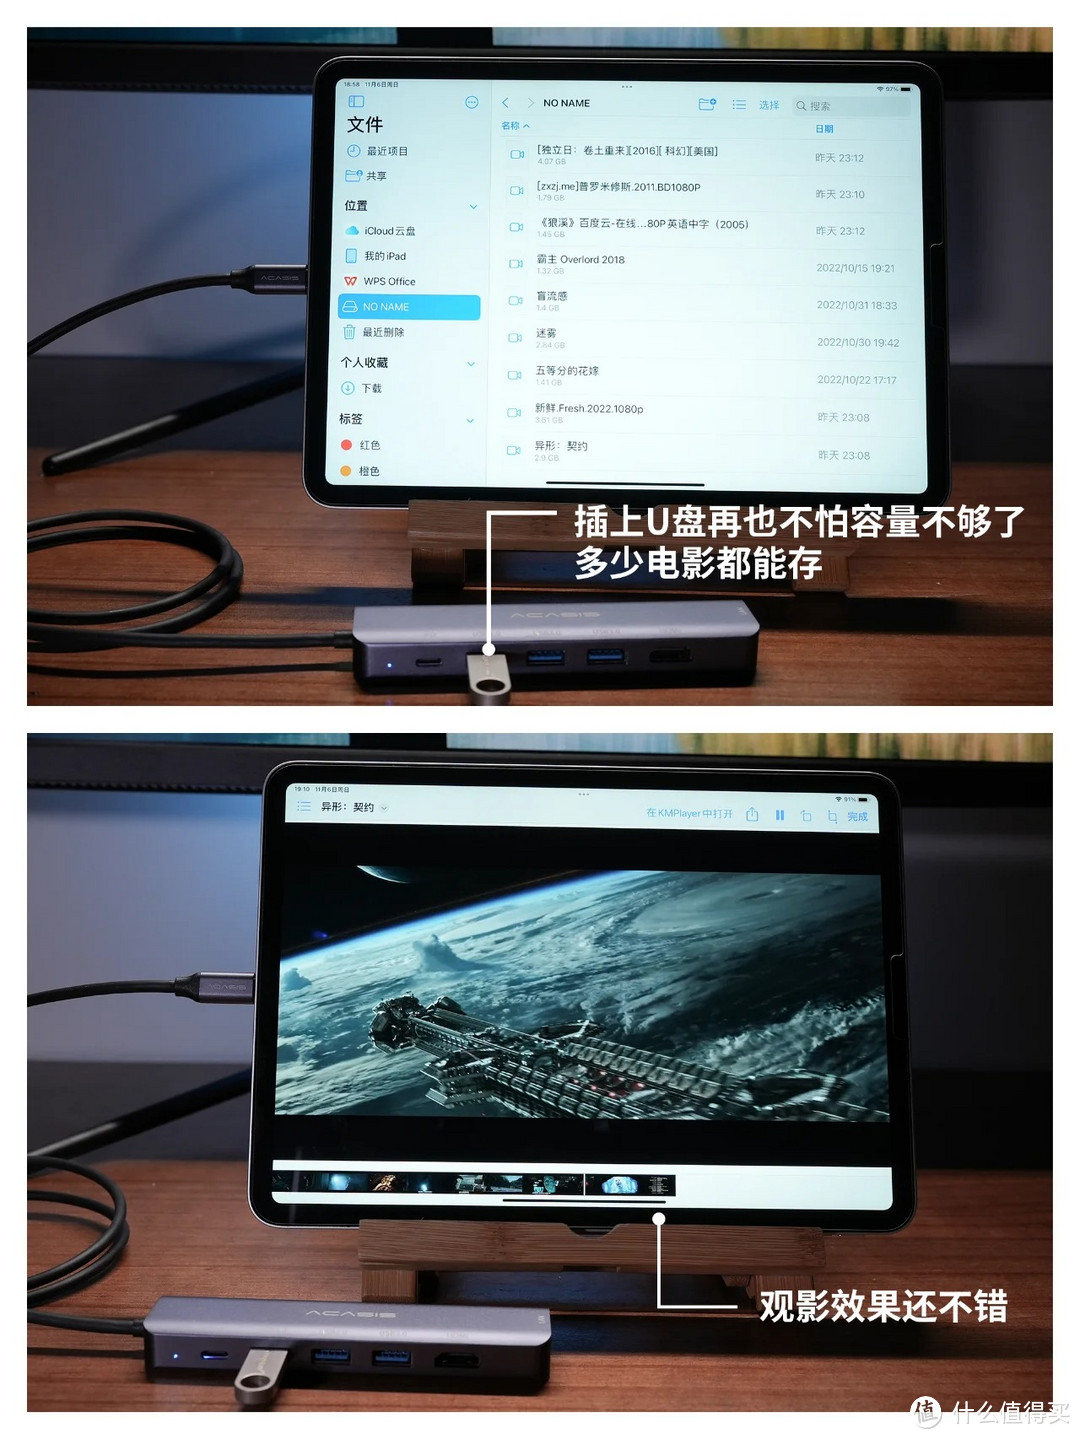 一个配件解锁iPad Pro无限潜能——阿卡西斯6合1扩展坞